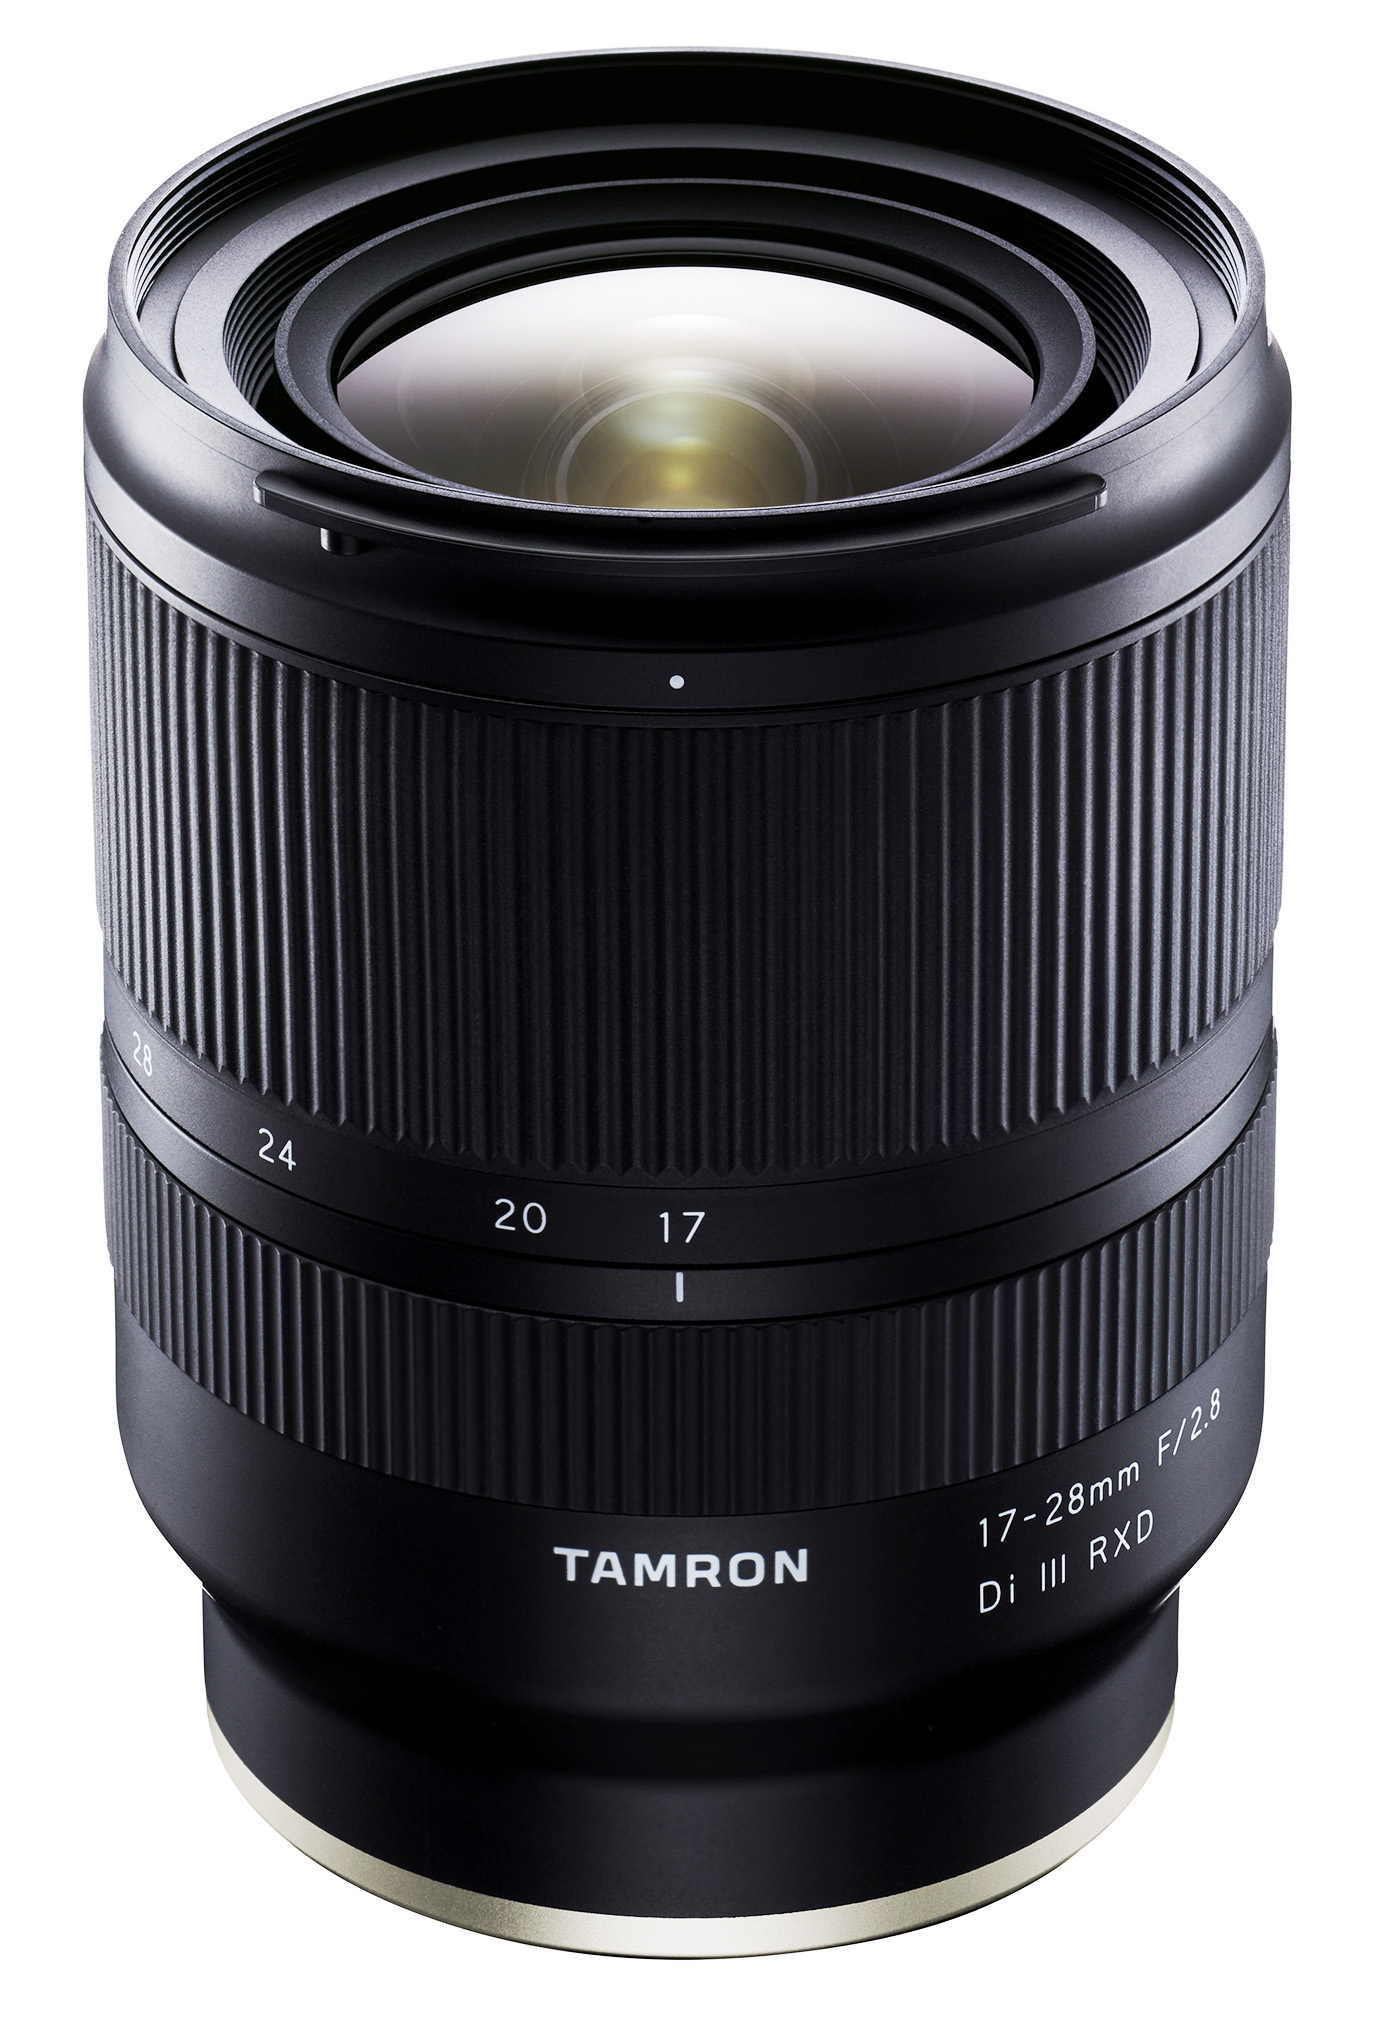 Best lenses 2019 Tamron 17-28mm